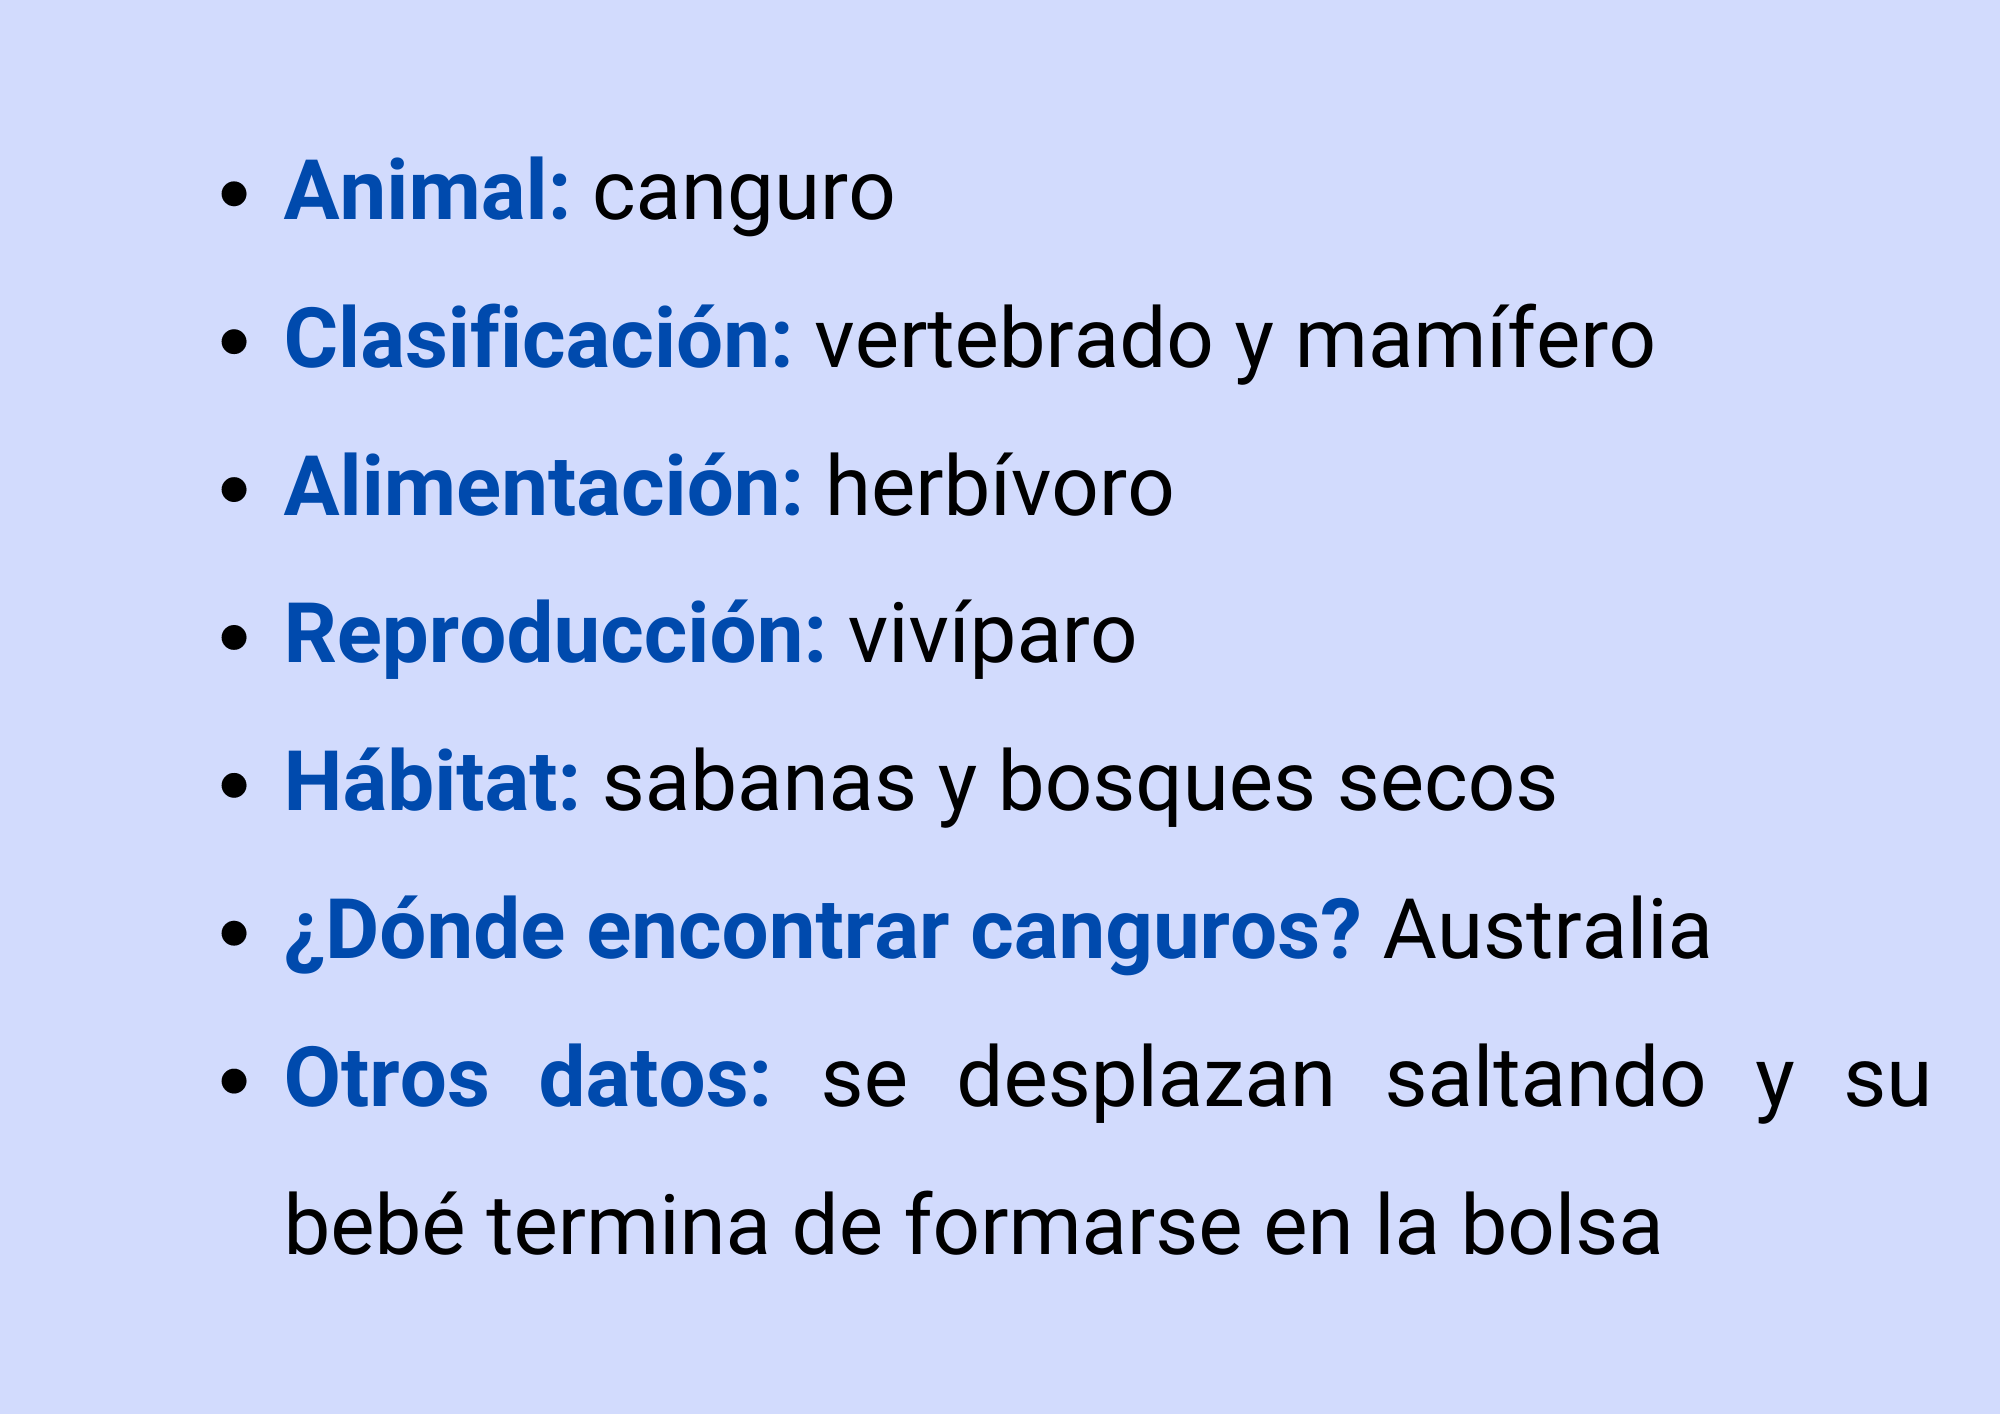 Animal: Canguro, Clasificación: vertebrado, mamífero, Alimentación: herbívoro